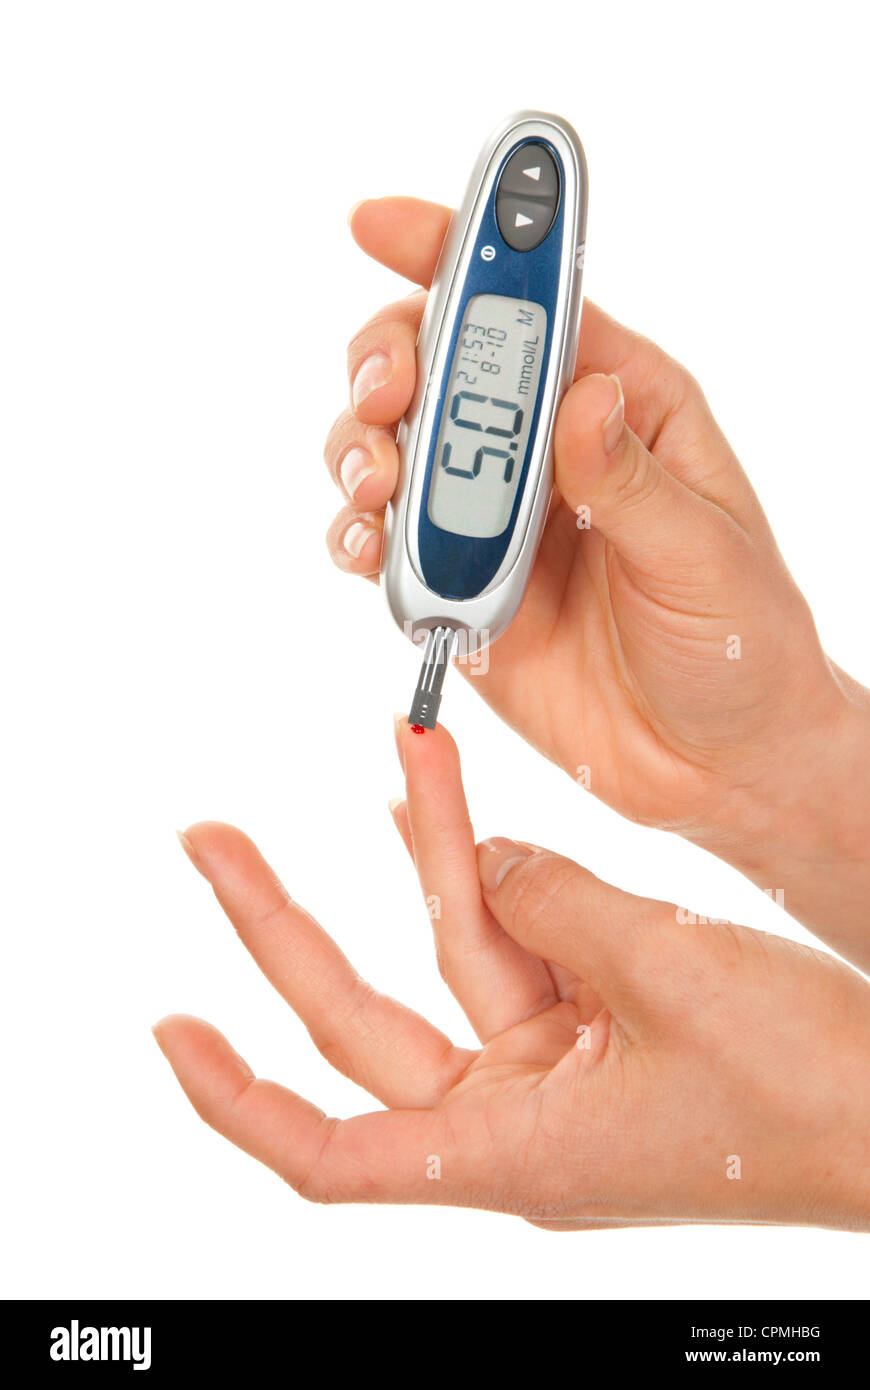 Paciente de diabetes midiendo el nivel de glucosa en la sangre Foto de stock